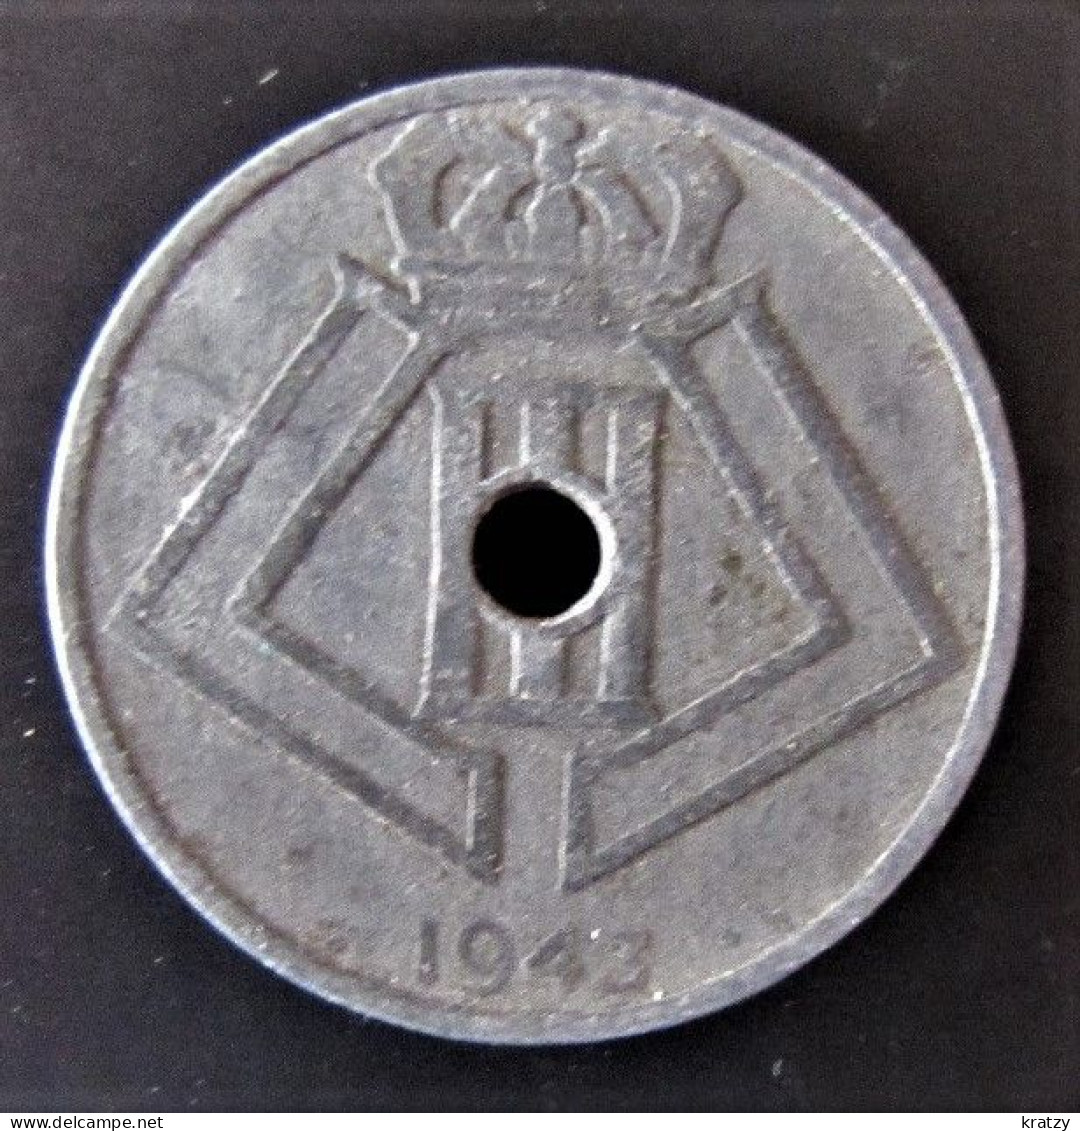 BELGIQUE - Pièce De 25 Centimes - Zinc - 1943 - 25 Cent